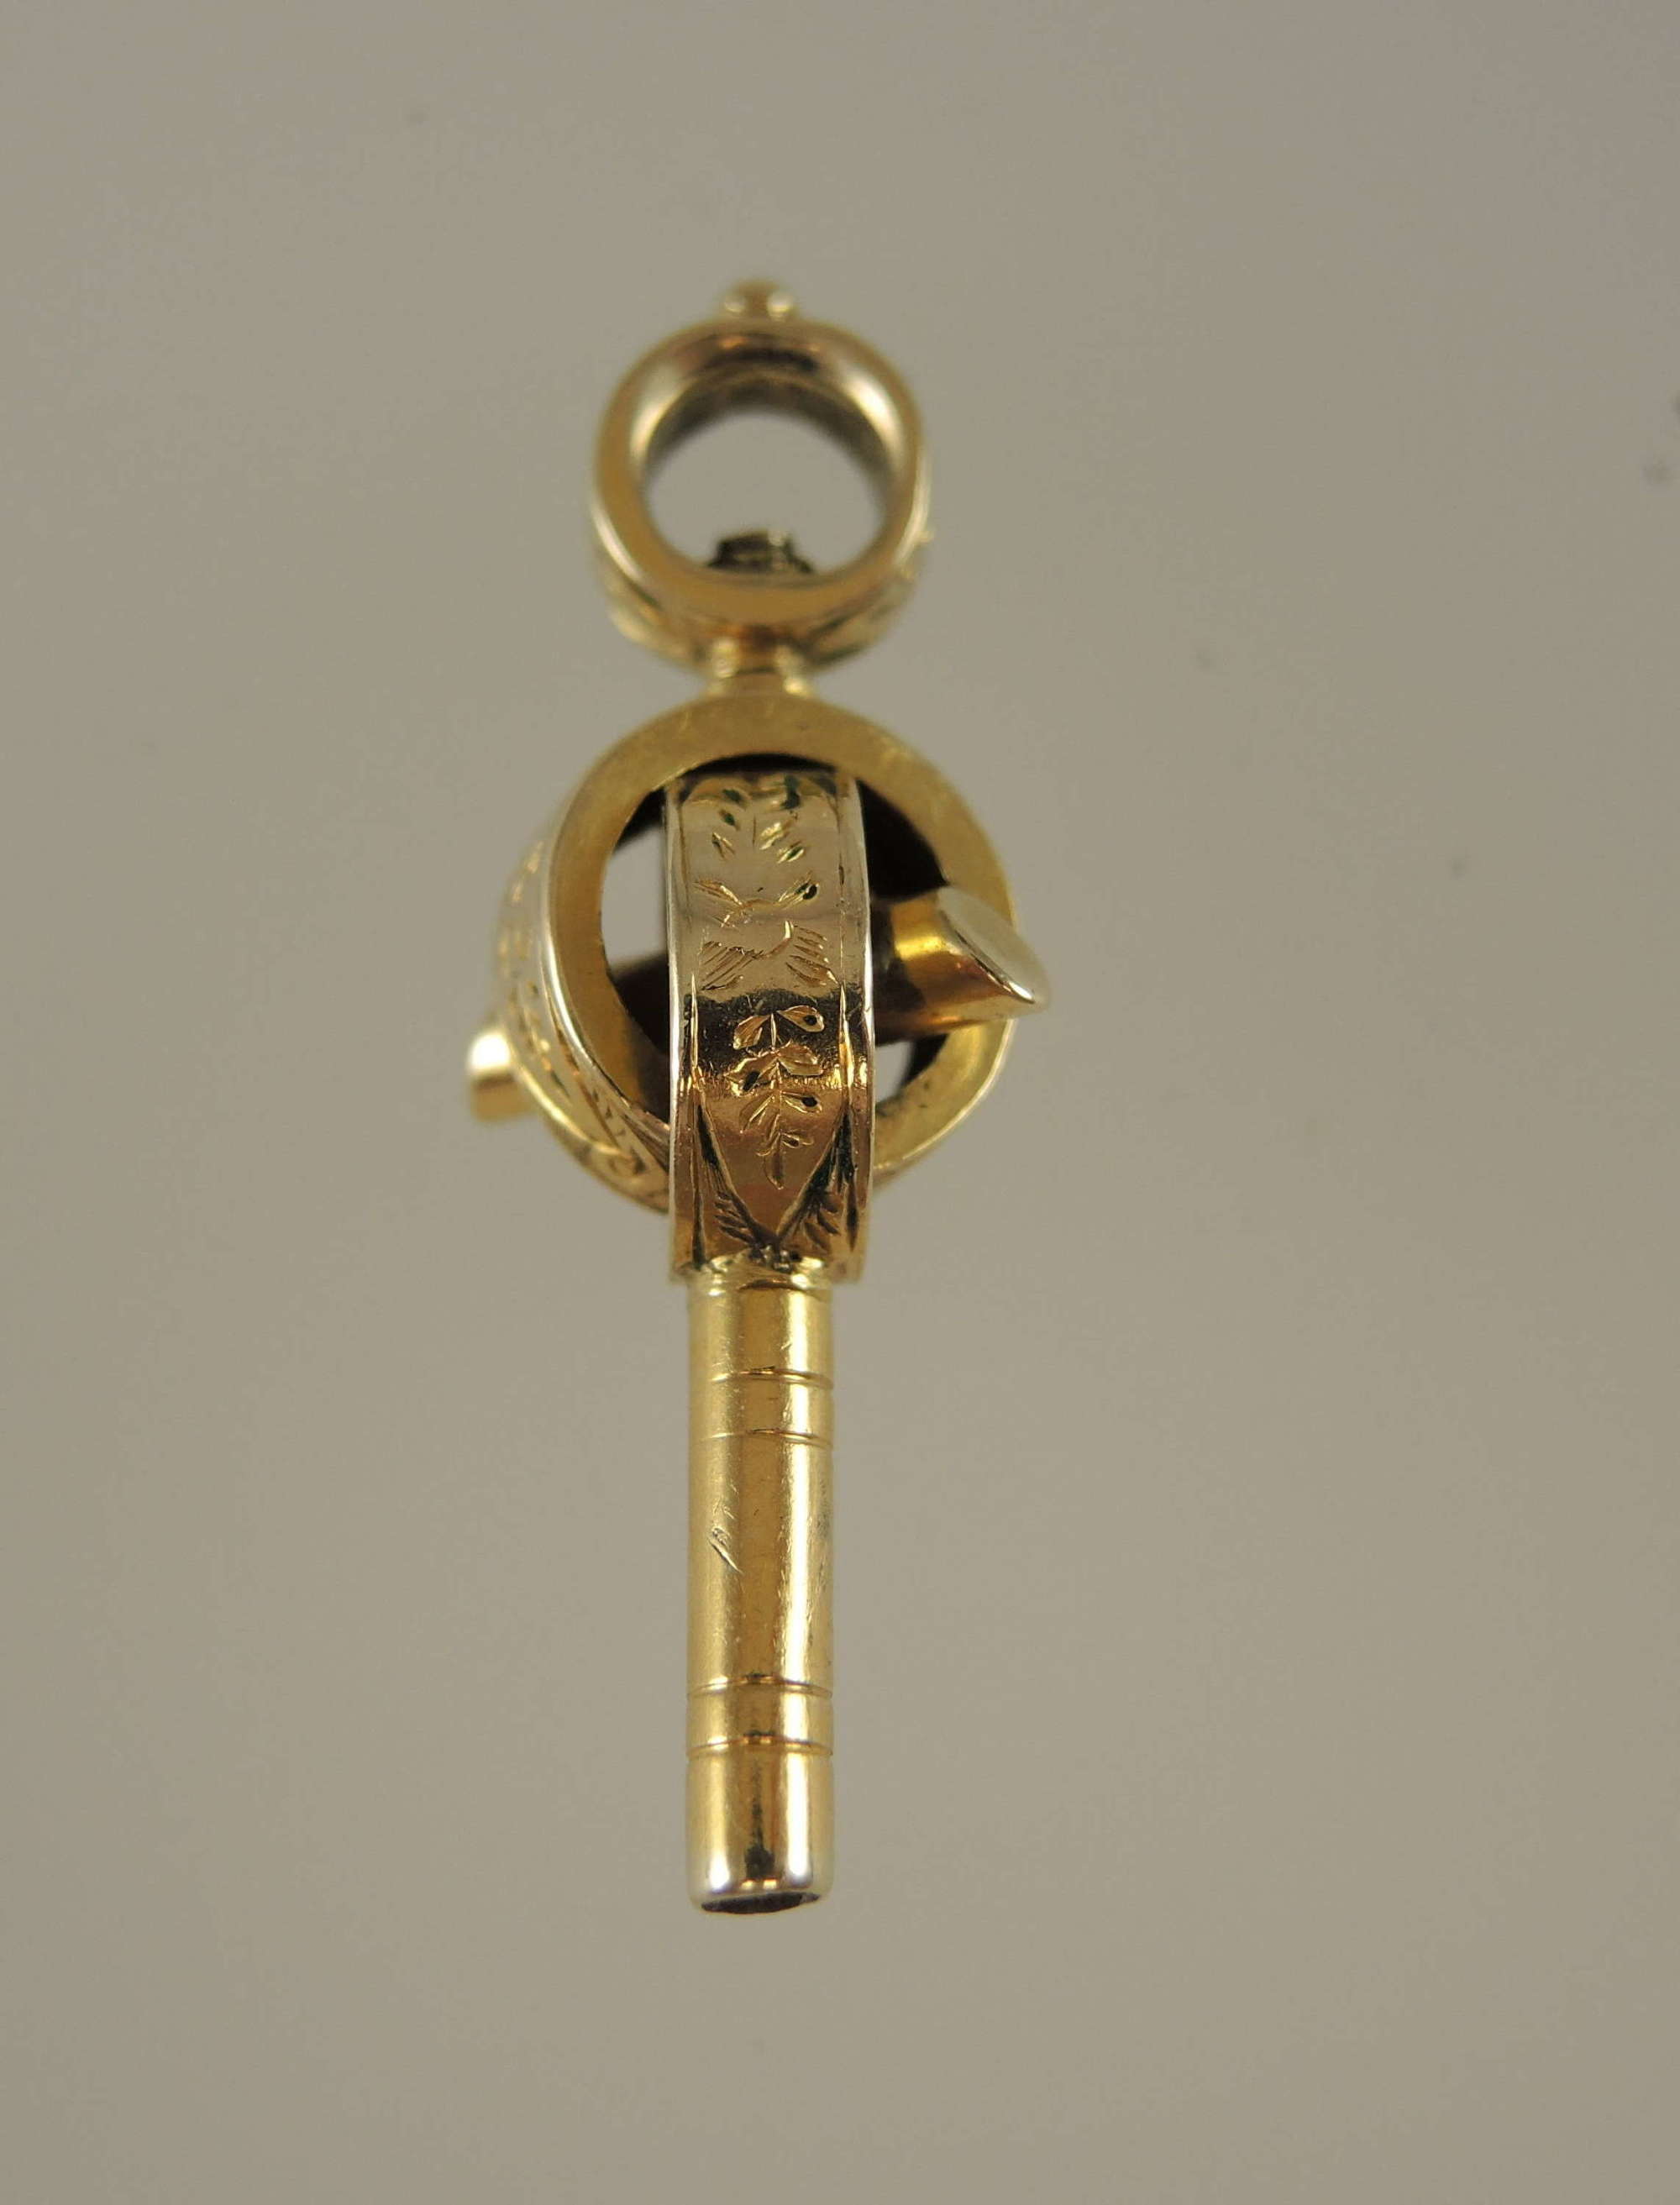 Unusual Gold cased pocket watch key c1850